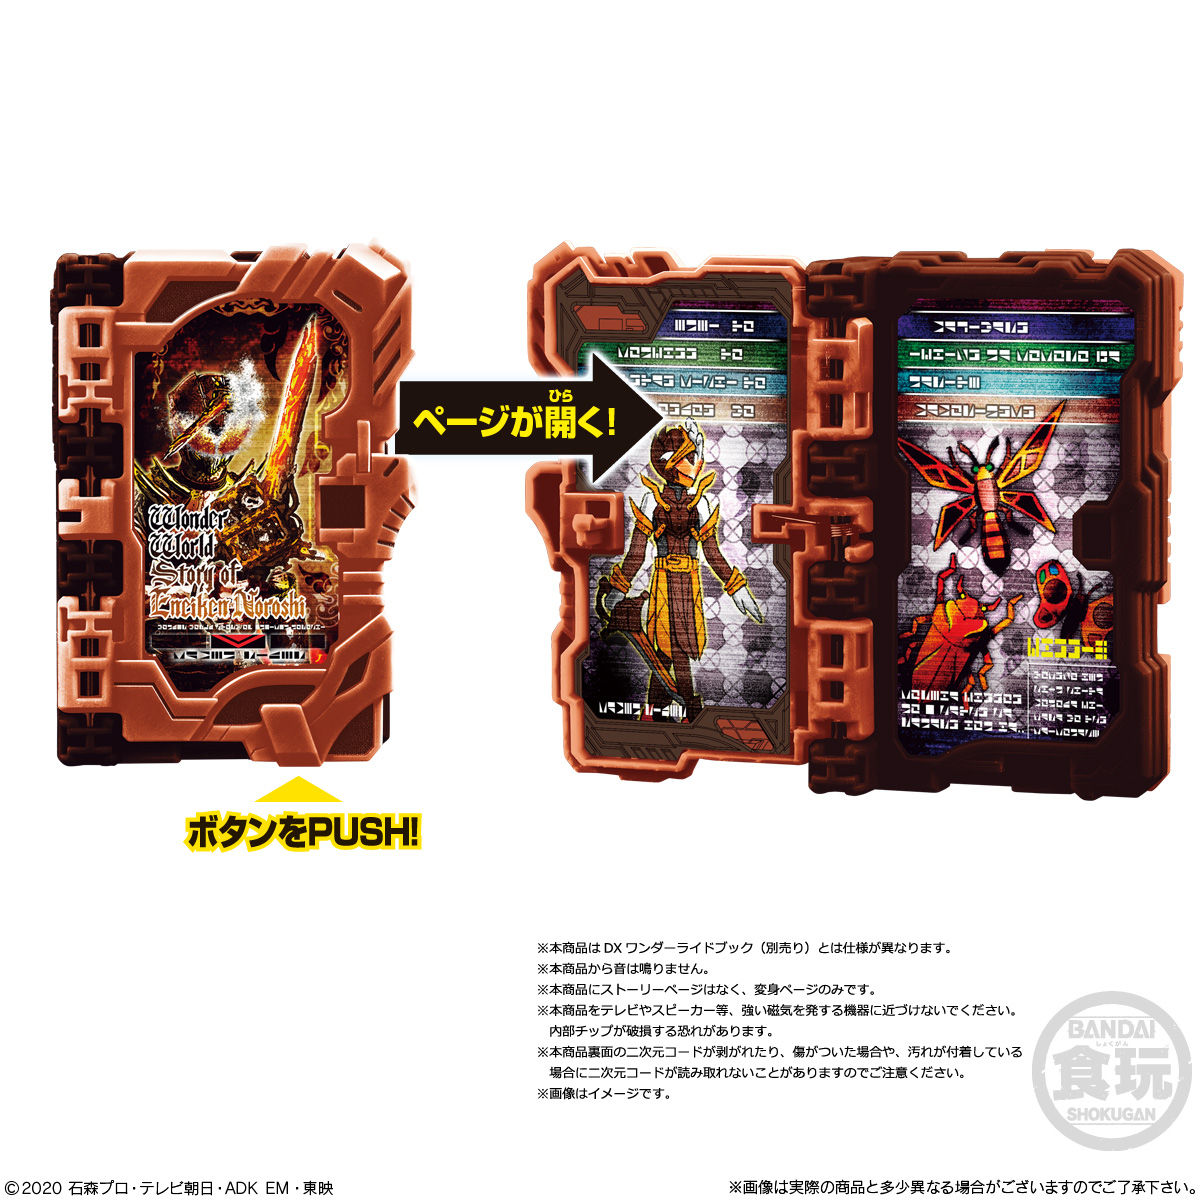 【食玩】仮面ライダーセイバー『コレクタブルワンダーライドブック SG08』8個入りBOX-008